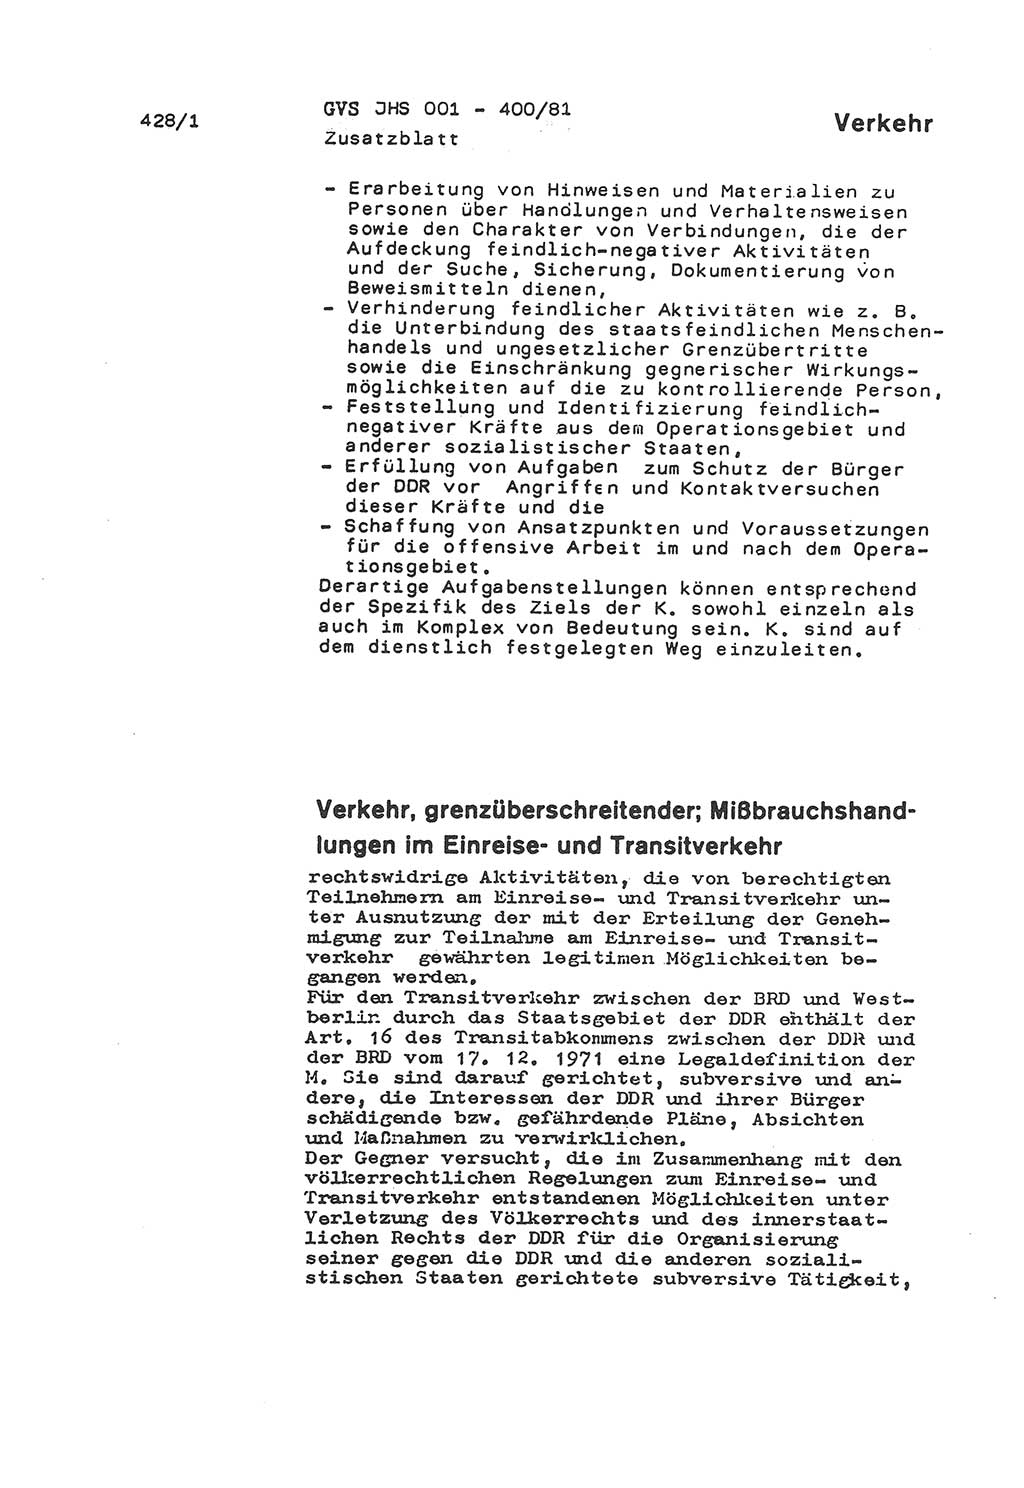 Wörterbuch der politisch-operativen Arbeit, Ministerium für Staatssicherheit (MfS) [Deutsche Demokratische Republik (DDR)], Juristische Hochschule (JHS), Geheime Verschlußsache (GVS) o001-400/81, Potsdam 1985, Blatt 428/1 (Wb. pol.-op. Arb. MfS DDR JHS GVS o001-400/81 1985, Bl. 428/1)